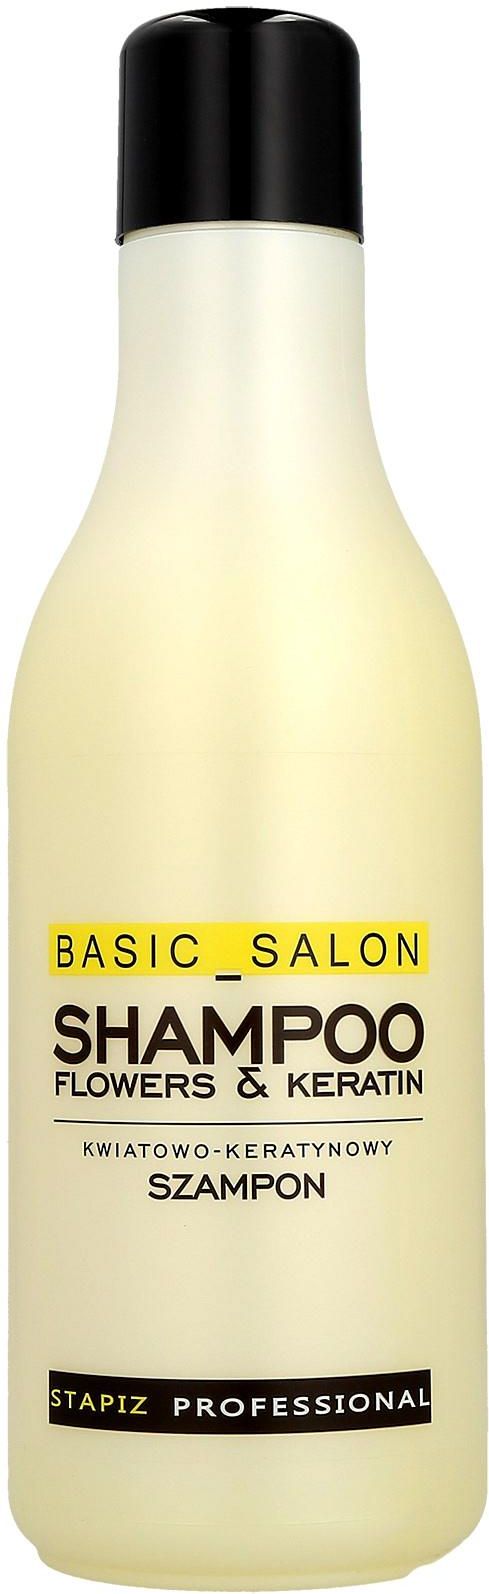 stapiz szampon do włosów kwiatowo keratynowy sklad